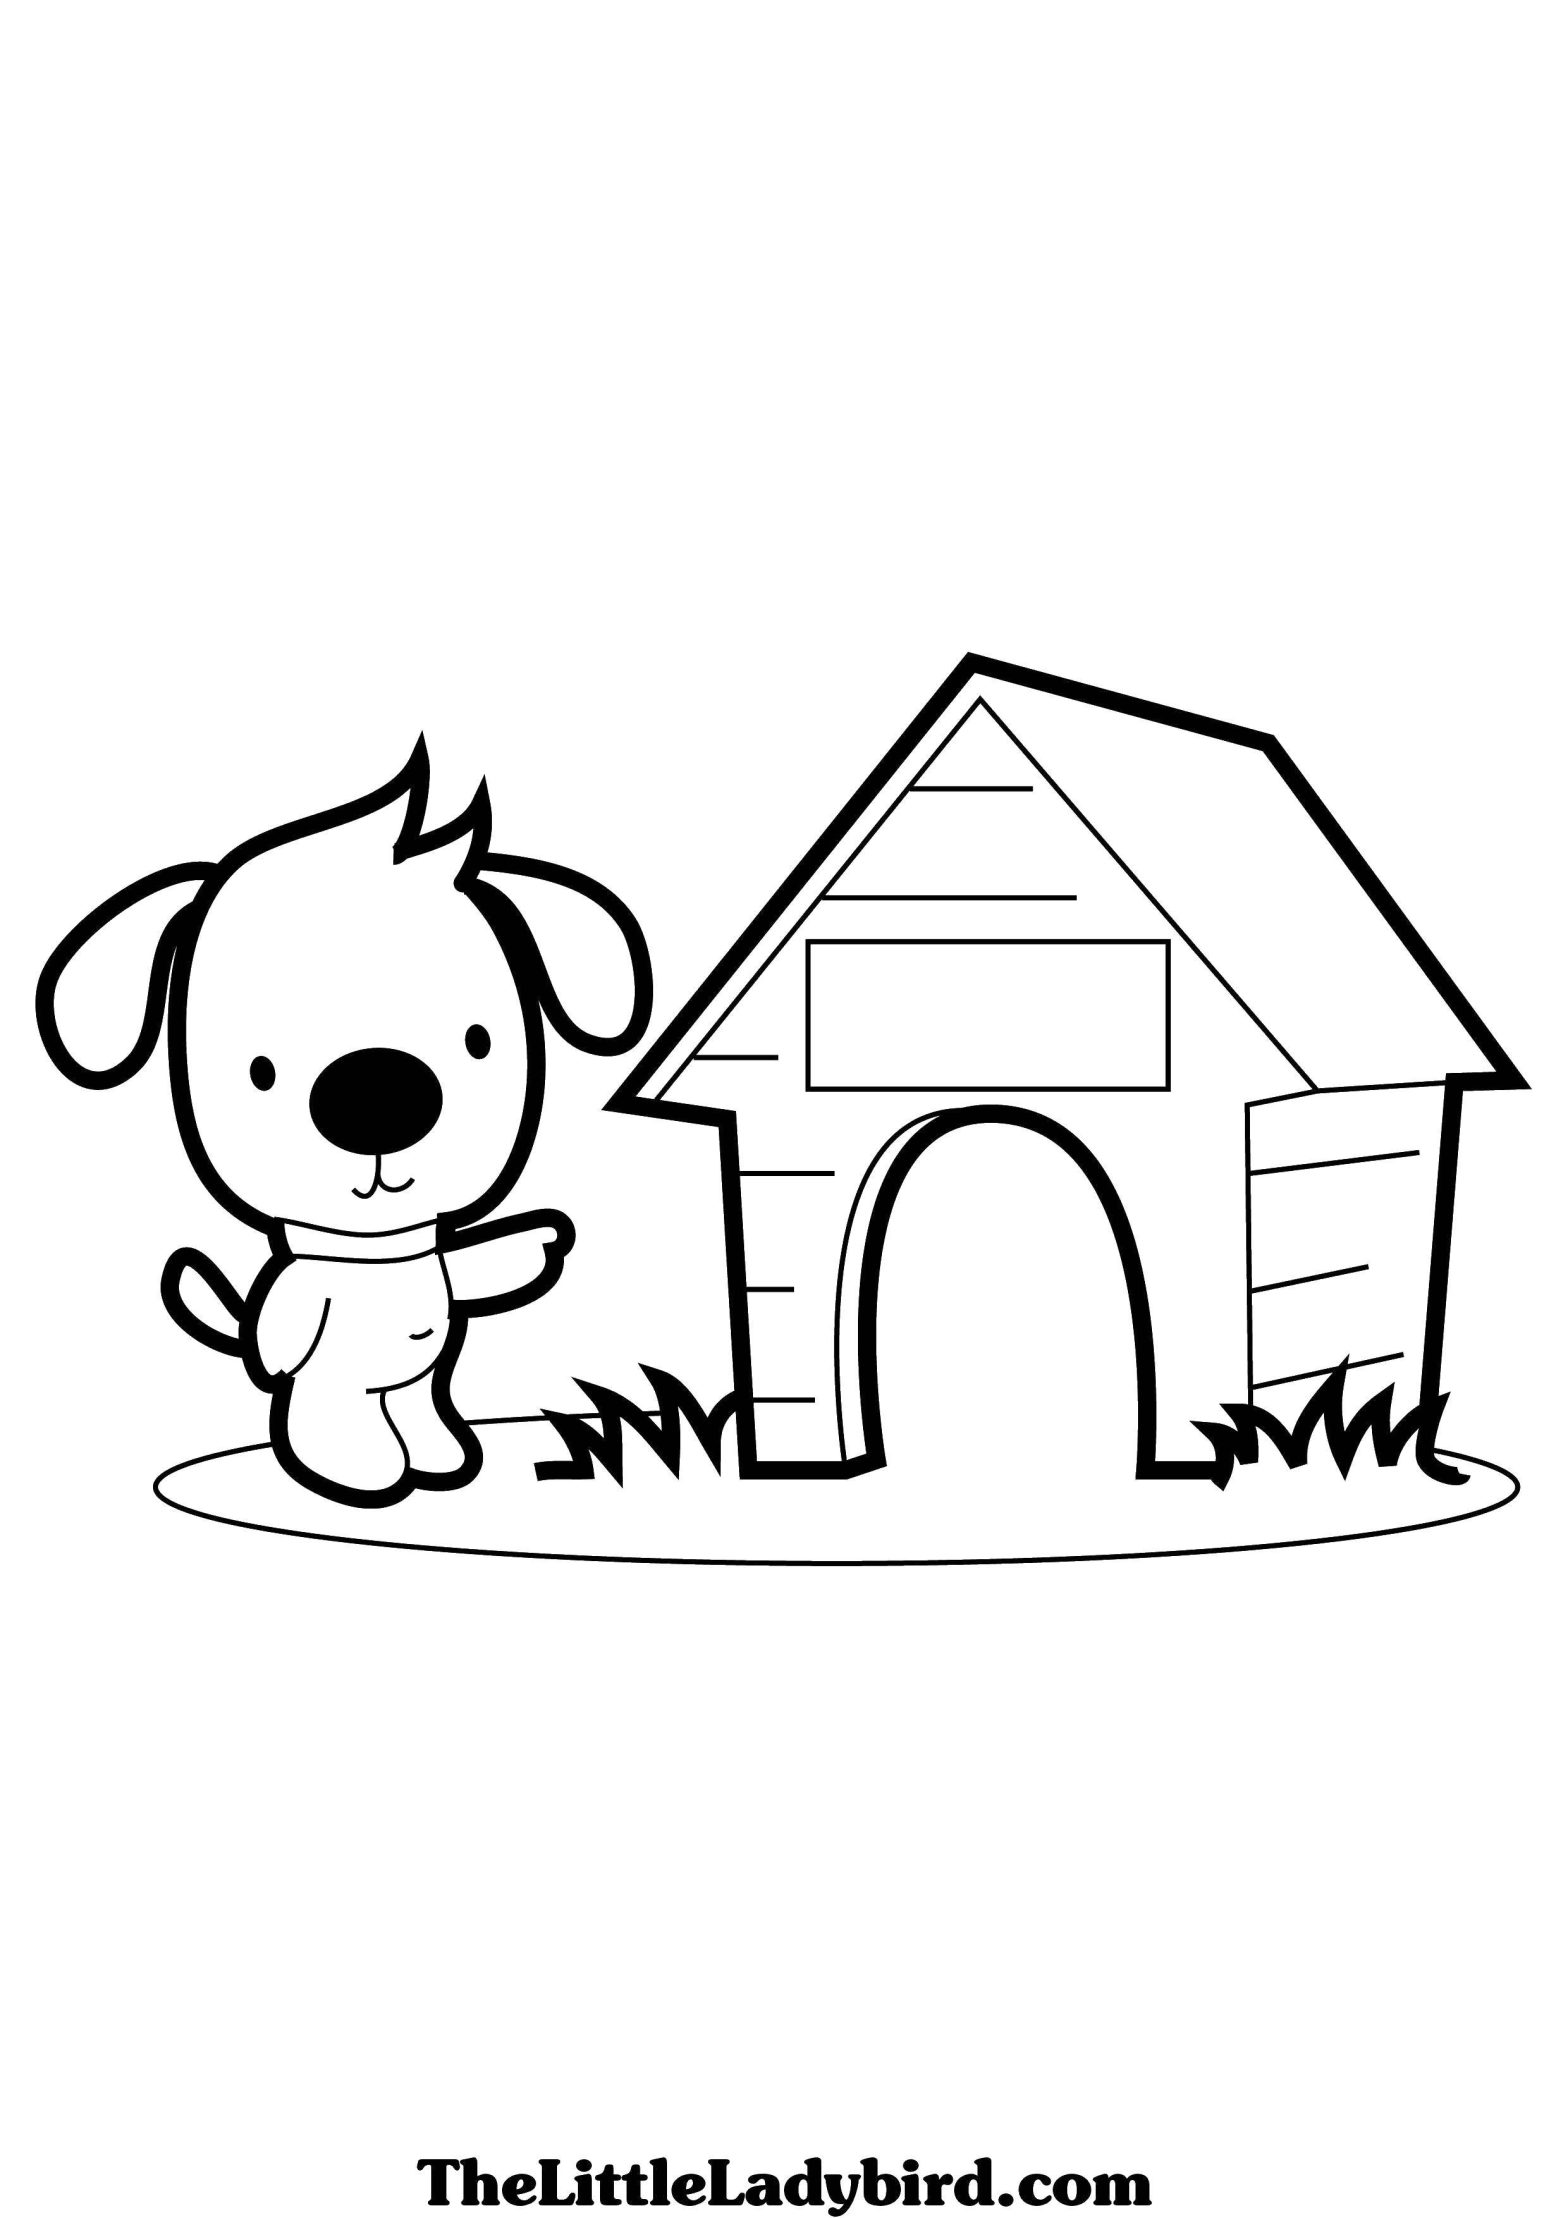 Раскраска с собакой и будкой для детей (собака, будка, распечатки)